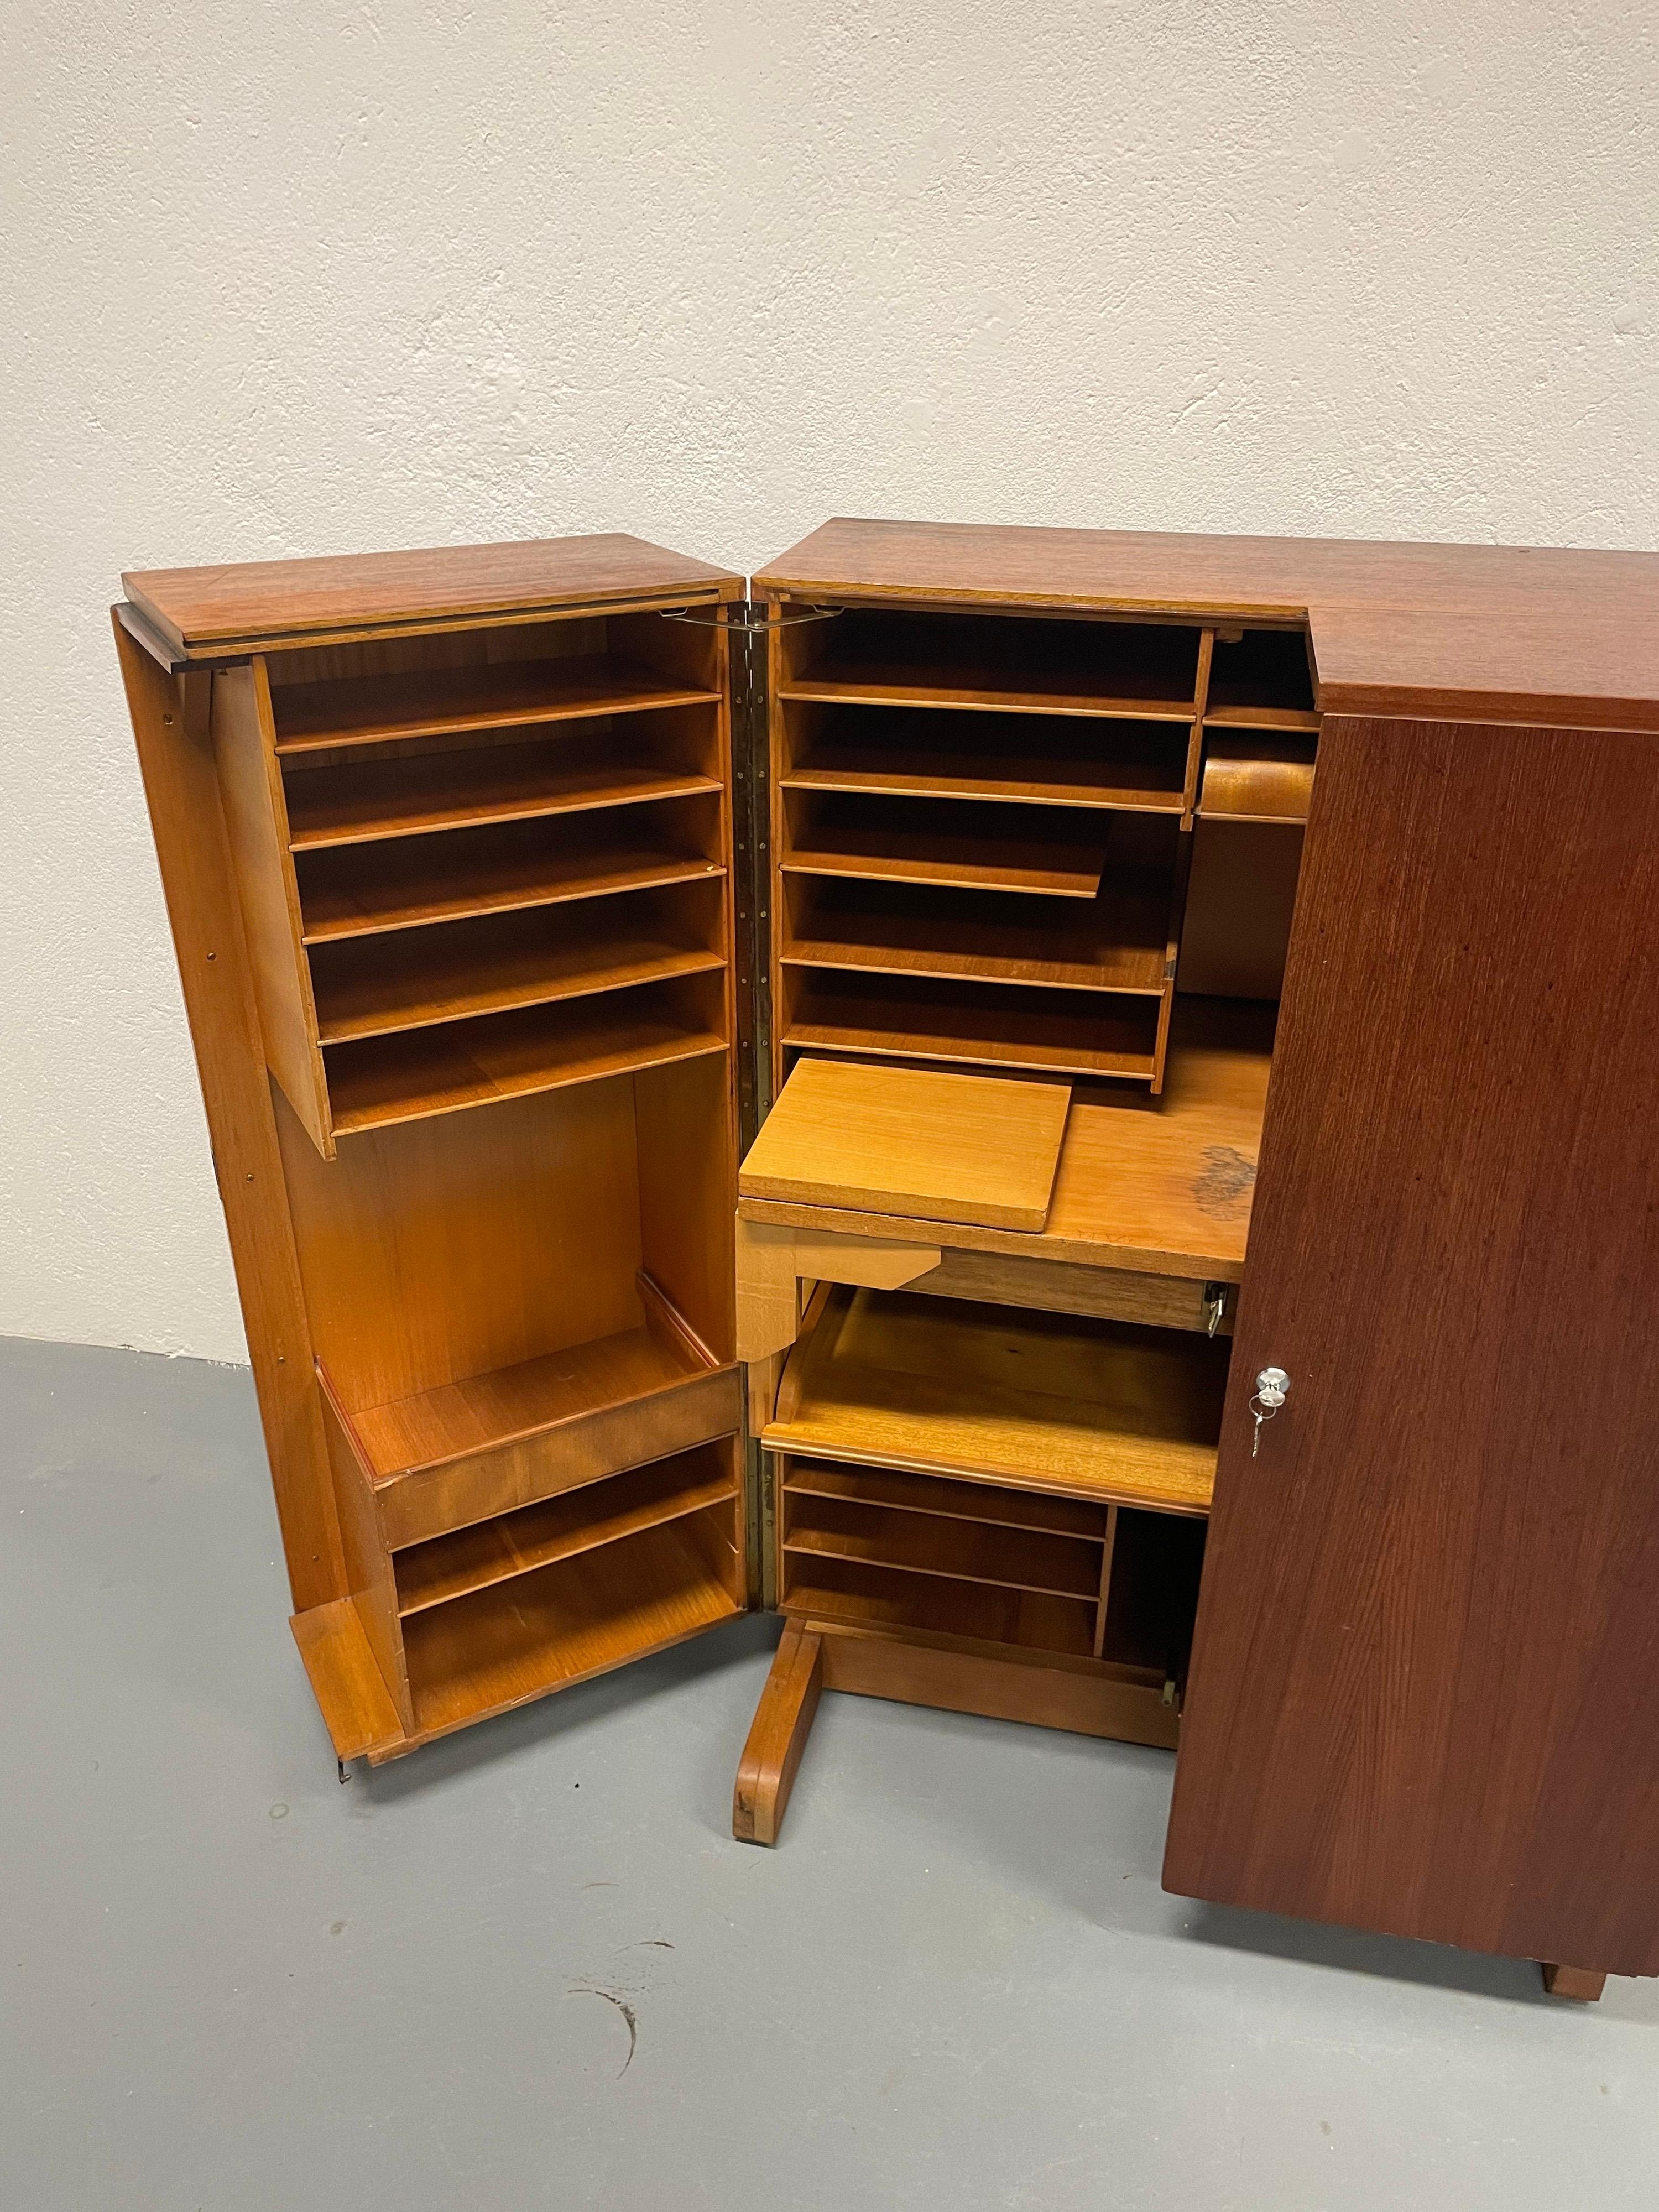 Mummenthaler & Meier Desk-in-a-Box or 